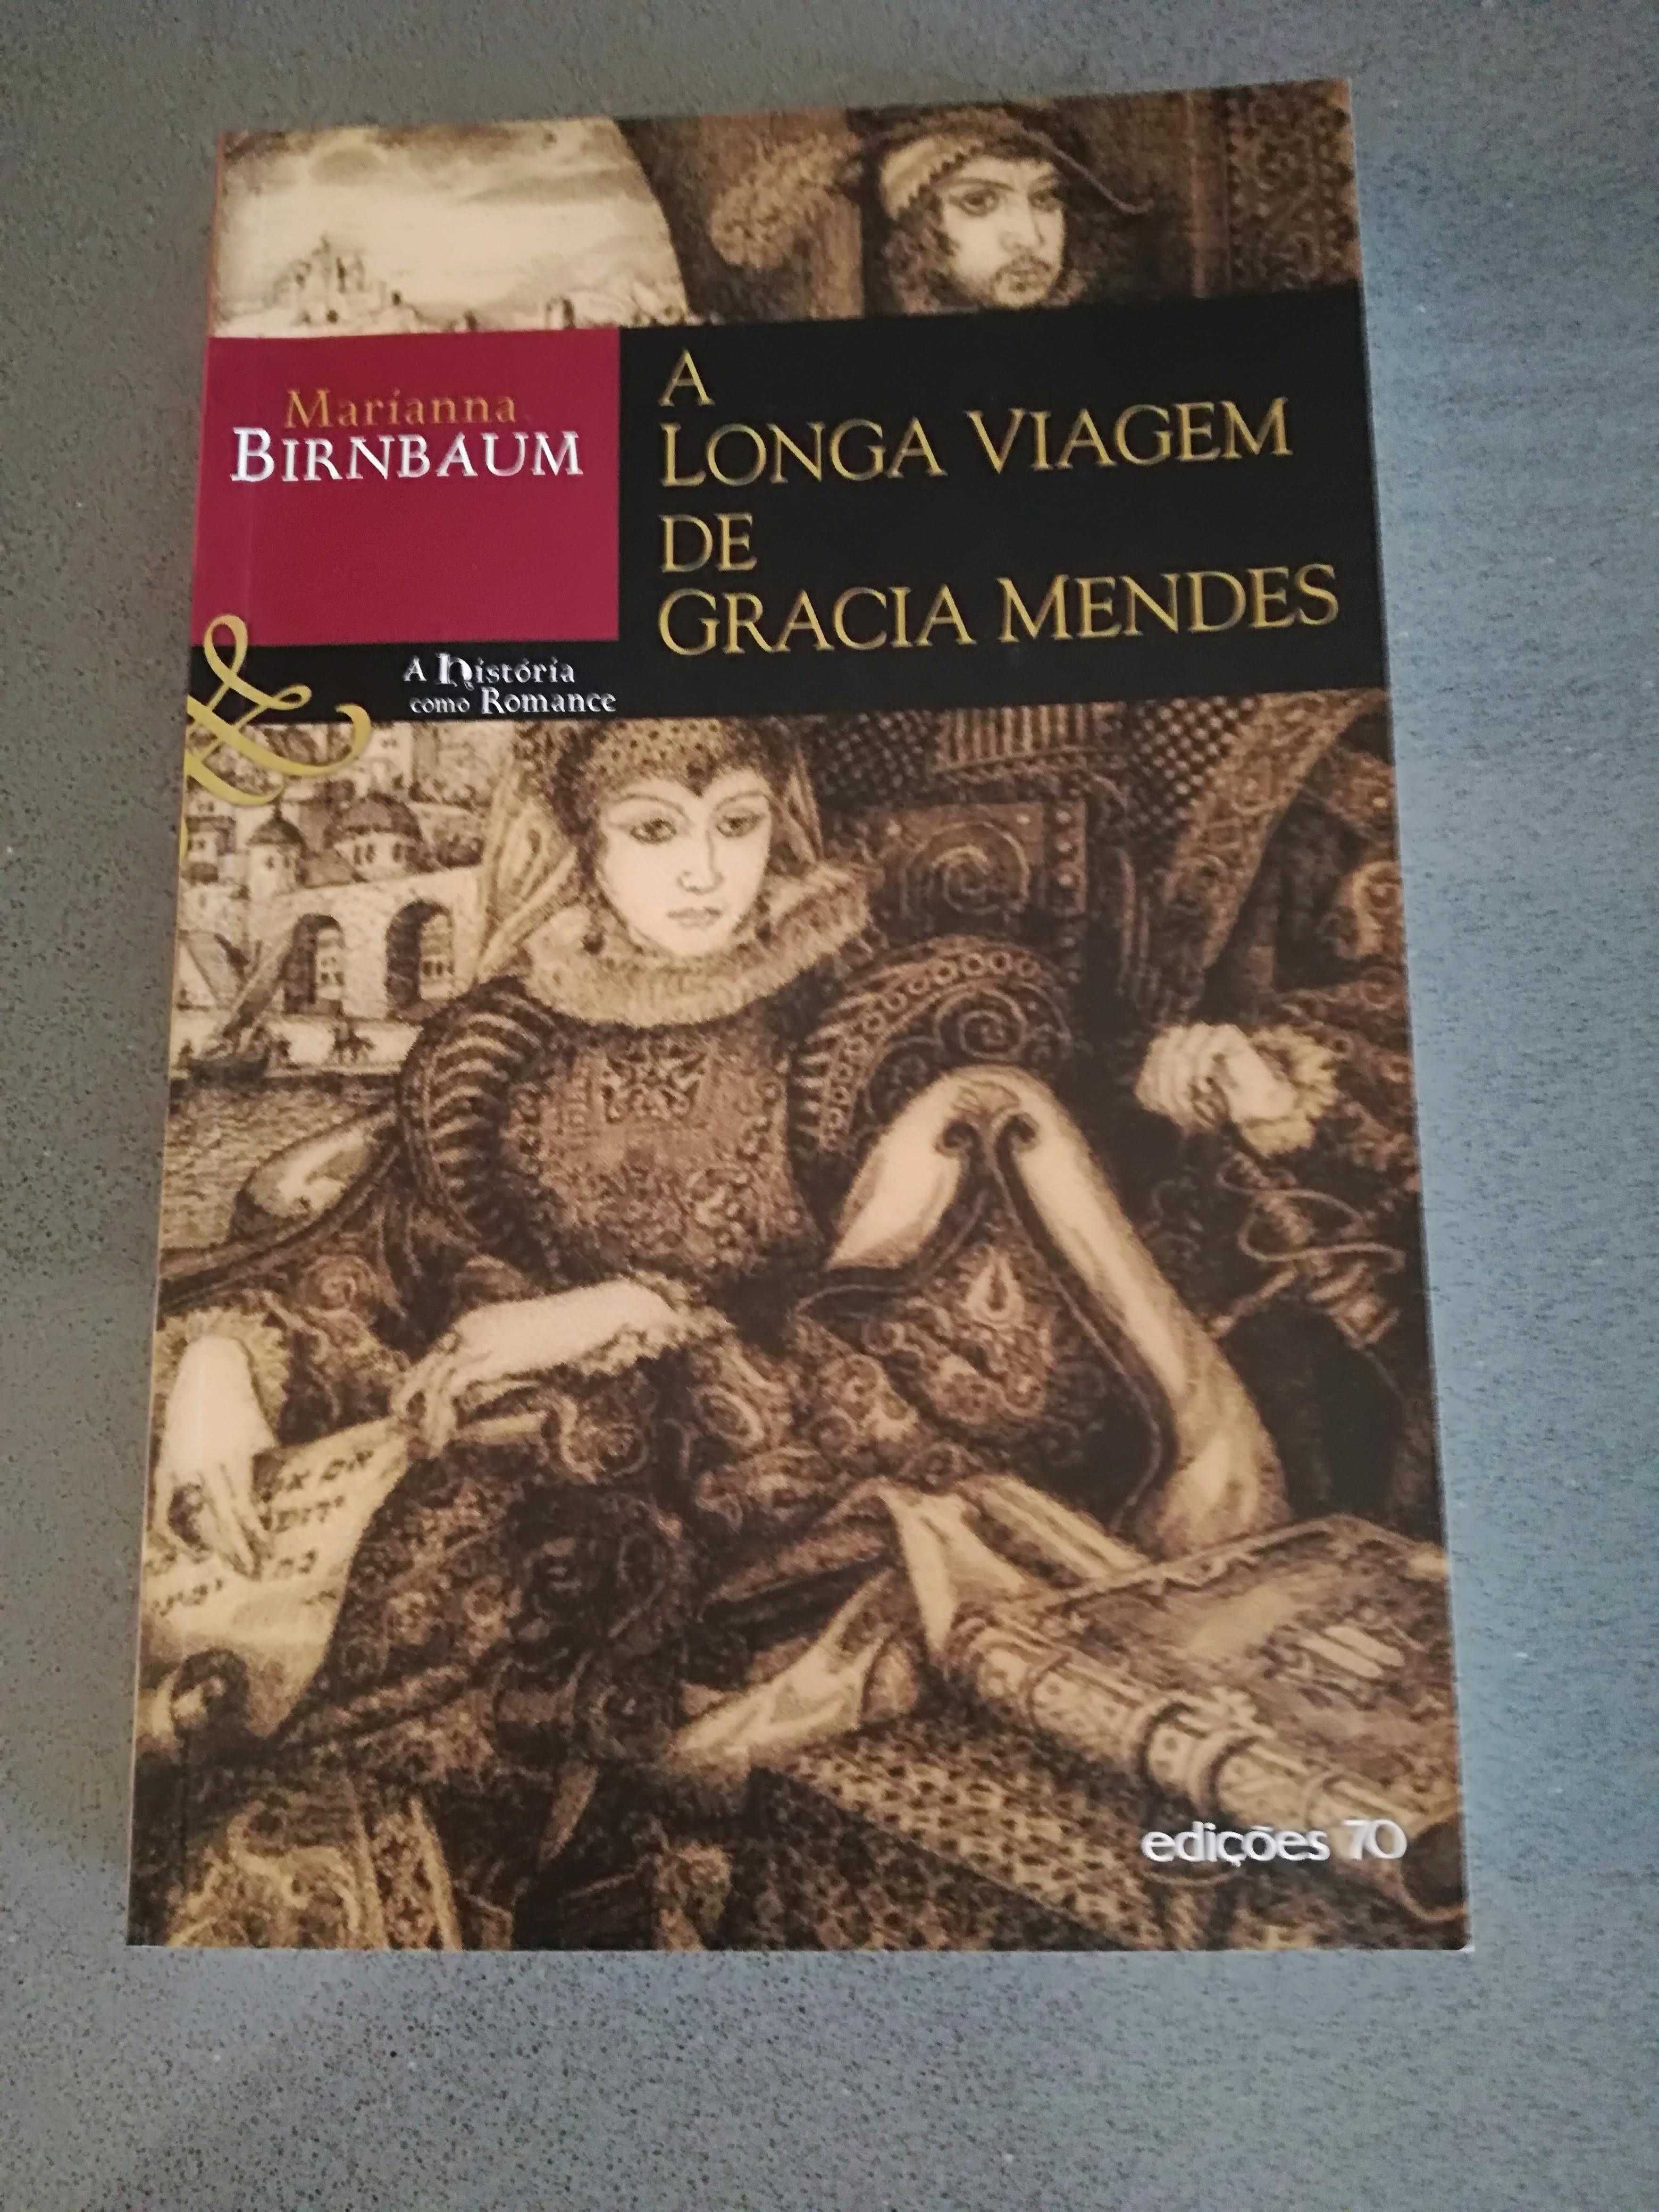 Marianna Birnbaum - A Longa Viagem de Gracia Mendes (PORTES GRATIS)